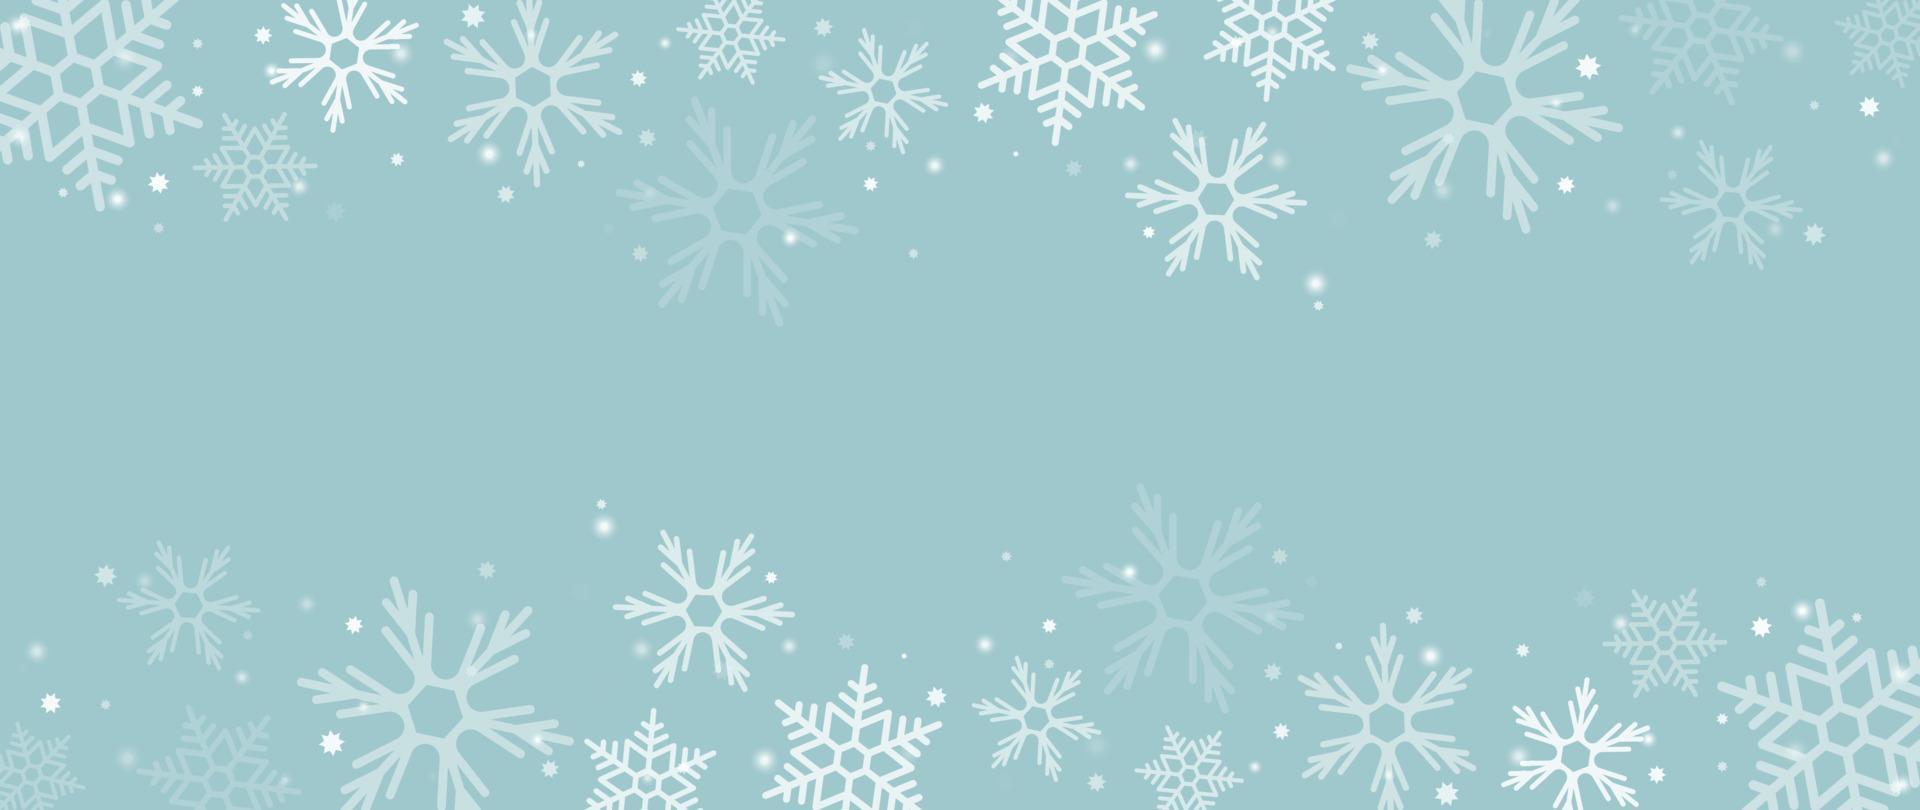 Ilustración de vector de fondo de copo de nieve de invierno elegante. copos de nieve brillantes decorativos de lujo y fondo bokeh brillante. diseño adecuado para tarjeta de invitación, saludo, papel tapiz, afiche, pancarta.